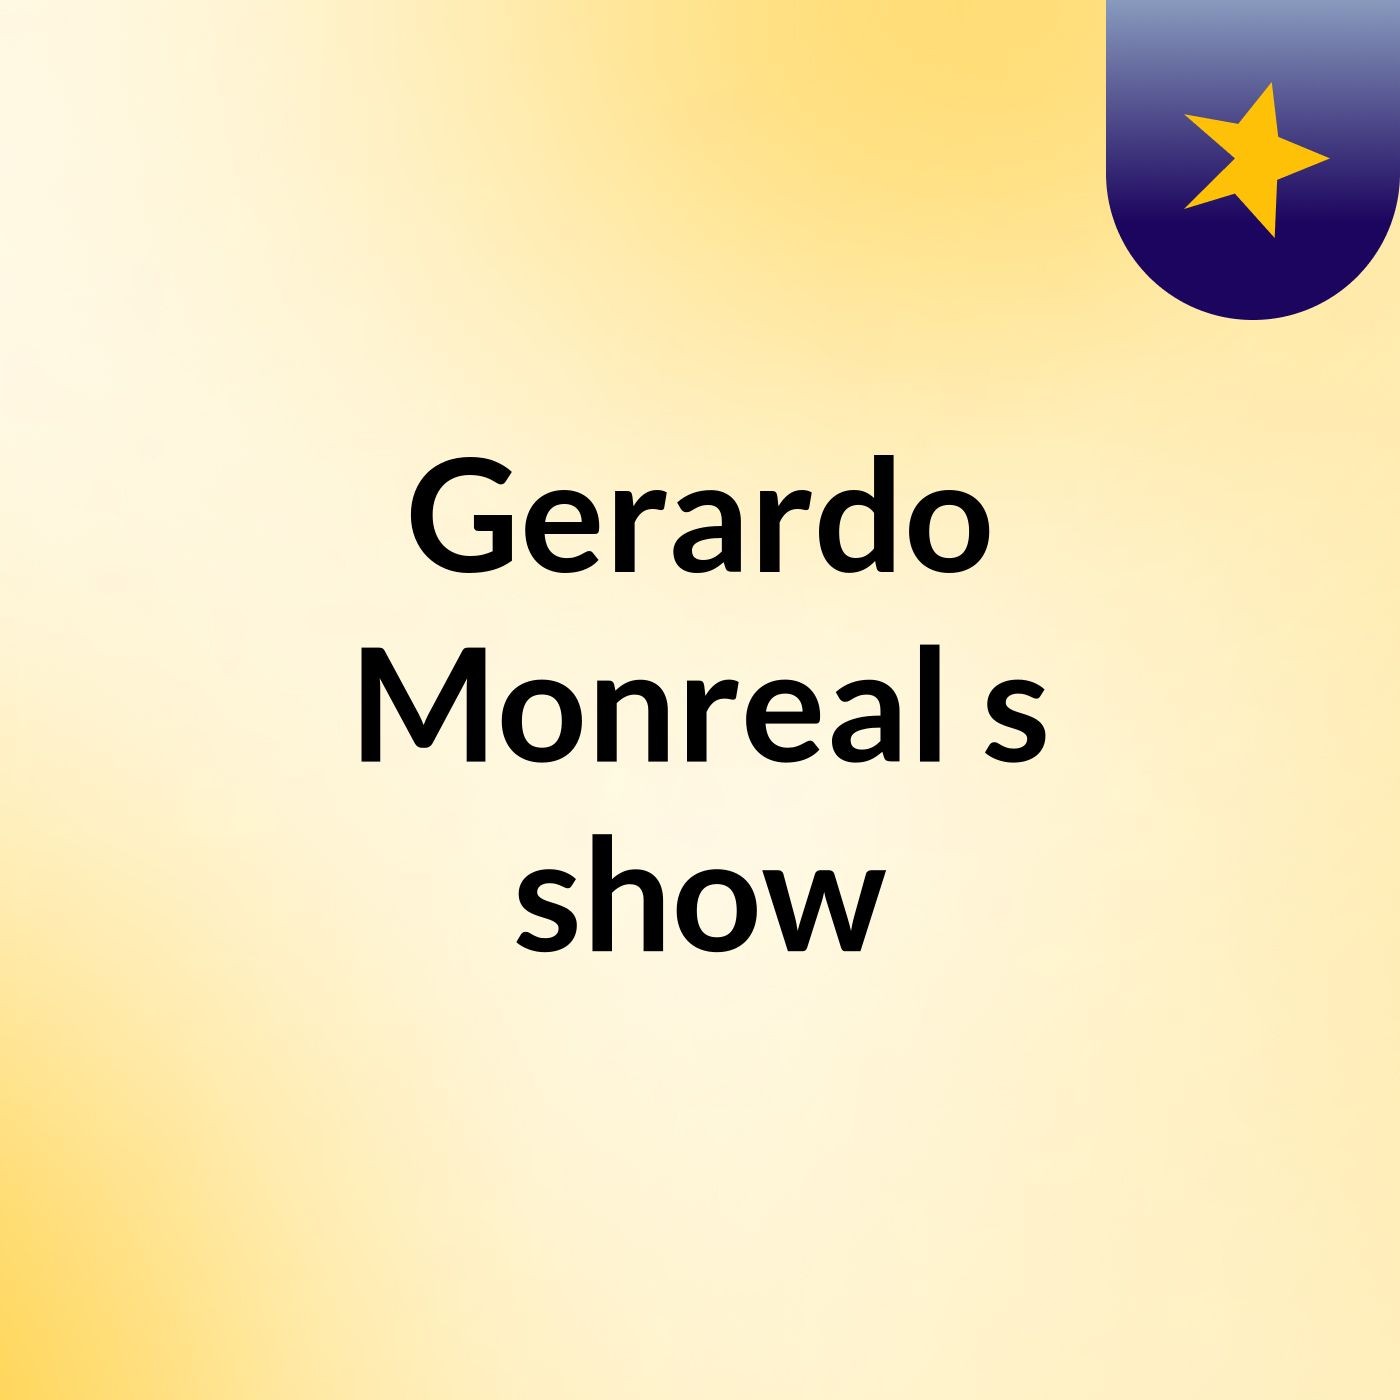 Gerardo Monreal's show